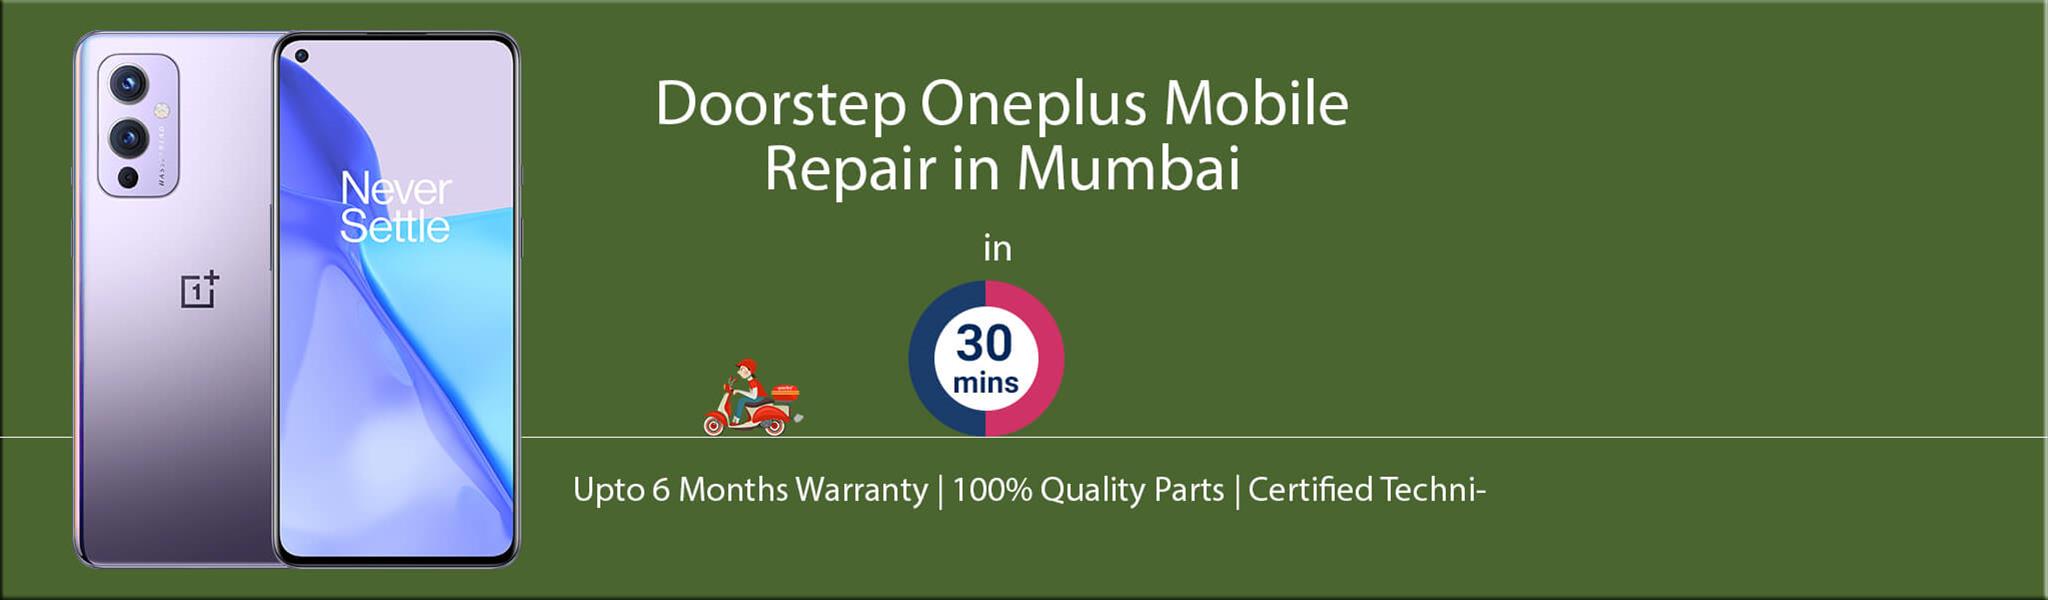 oneplus-repair-service-banner-mumbai.jpg